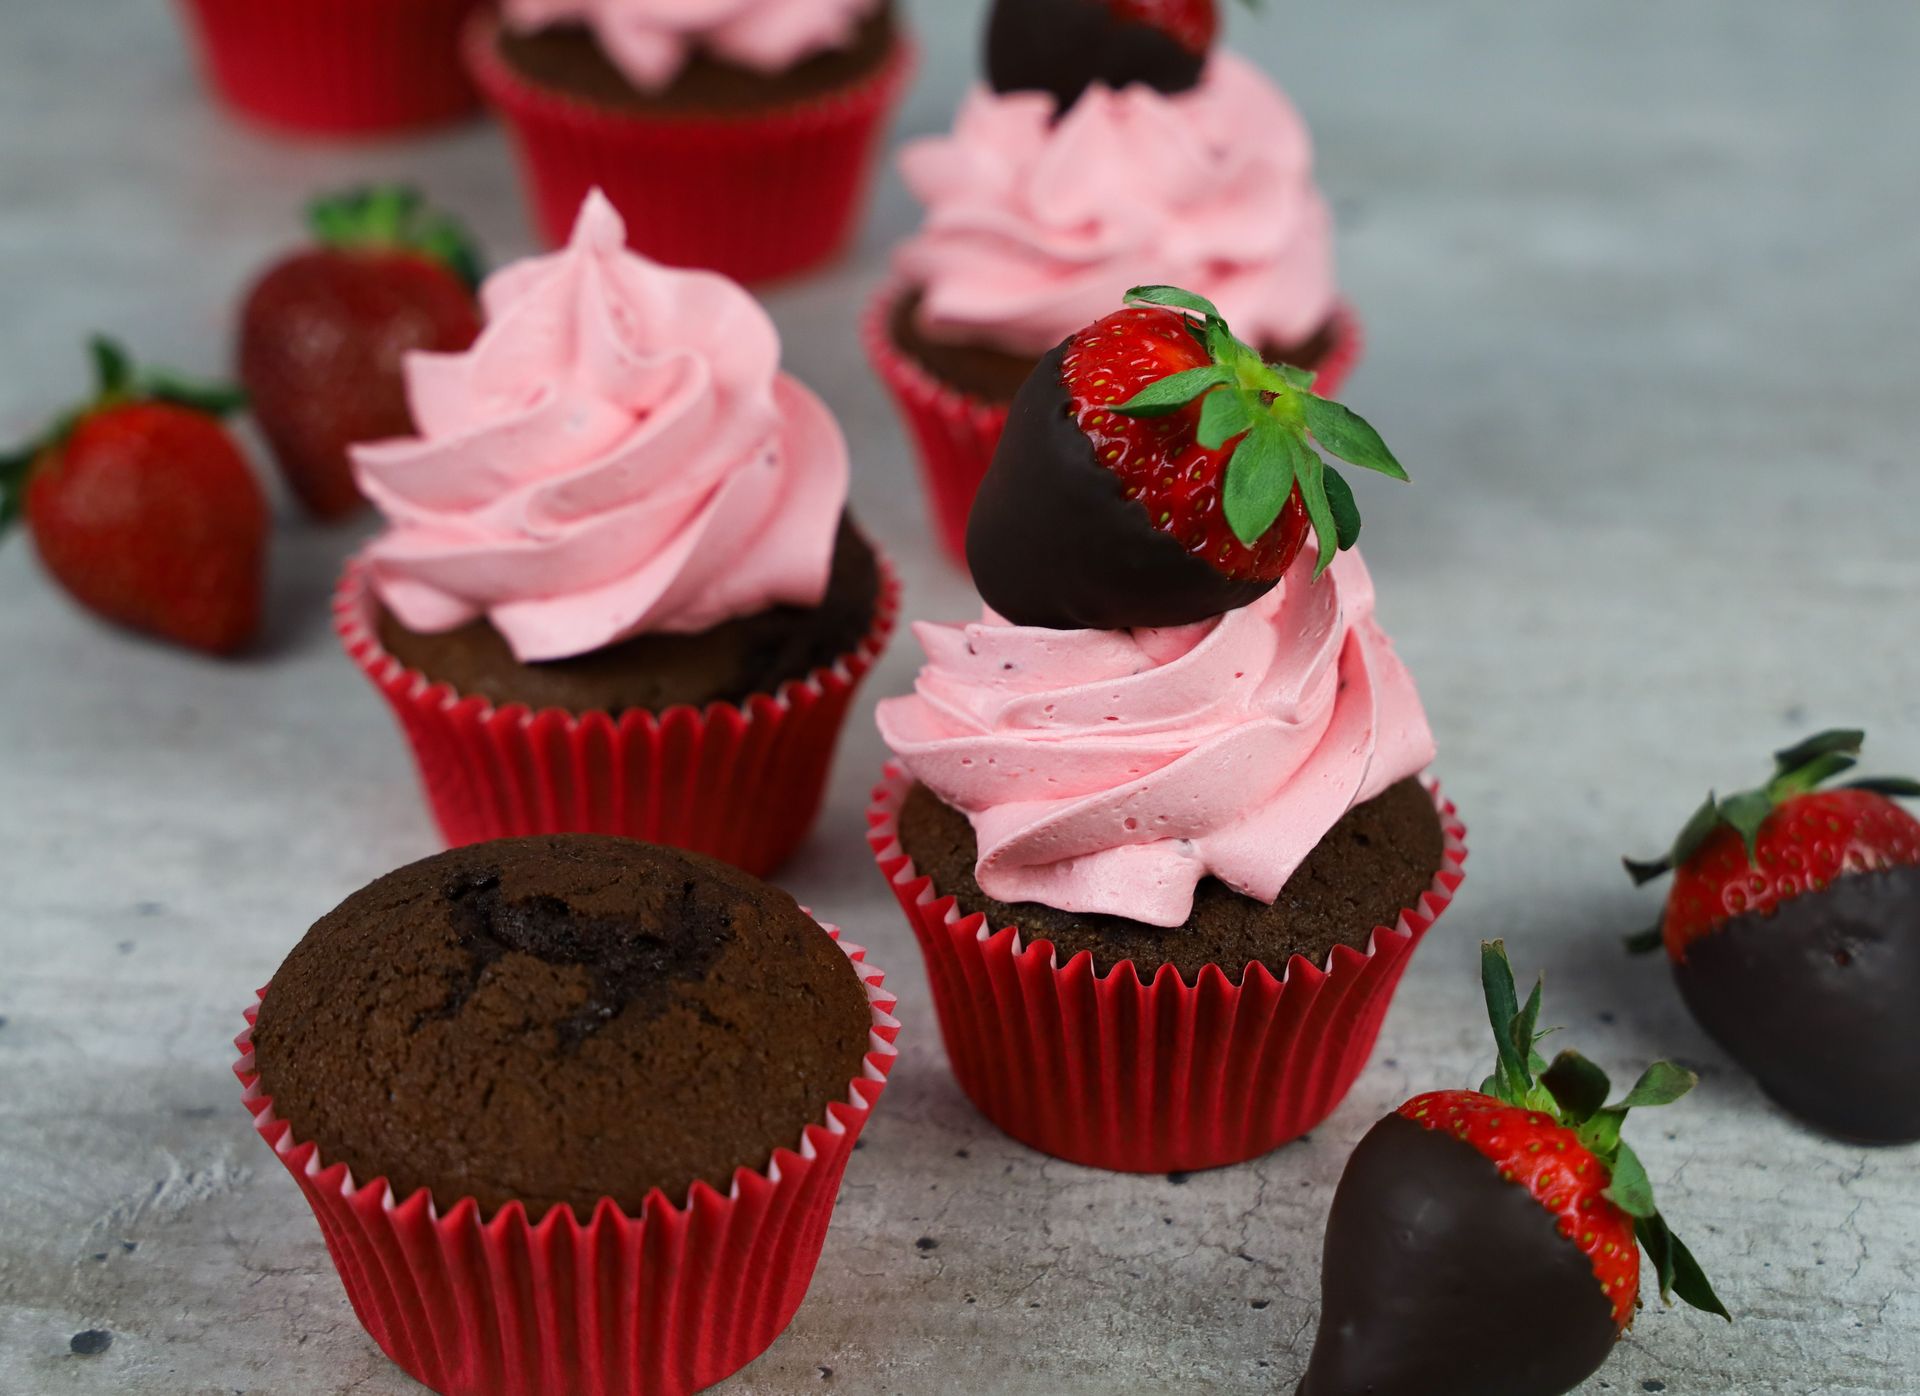 σοκολατένια cupcakes με βουτυρόκρεμα φράουλα.jpg